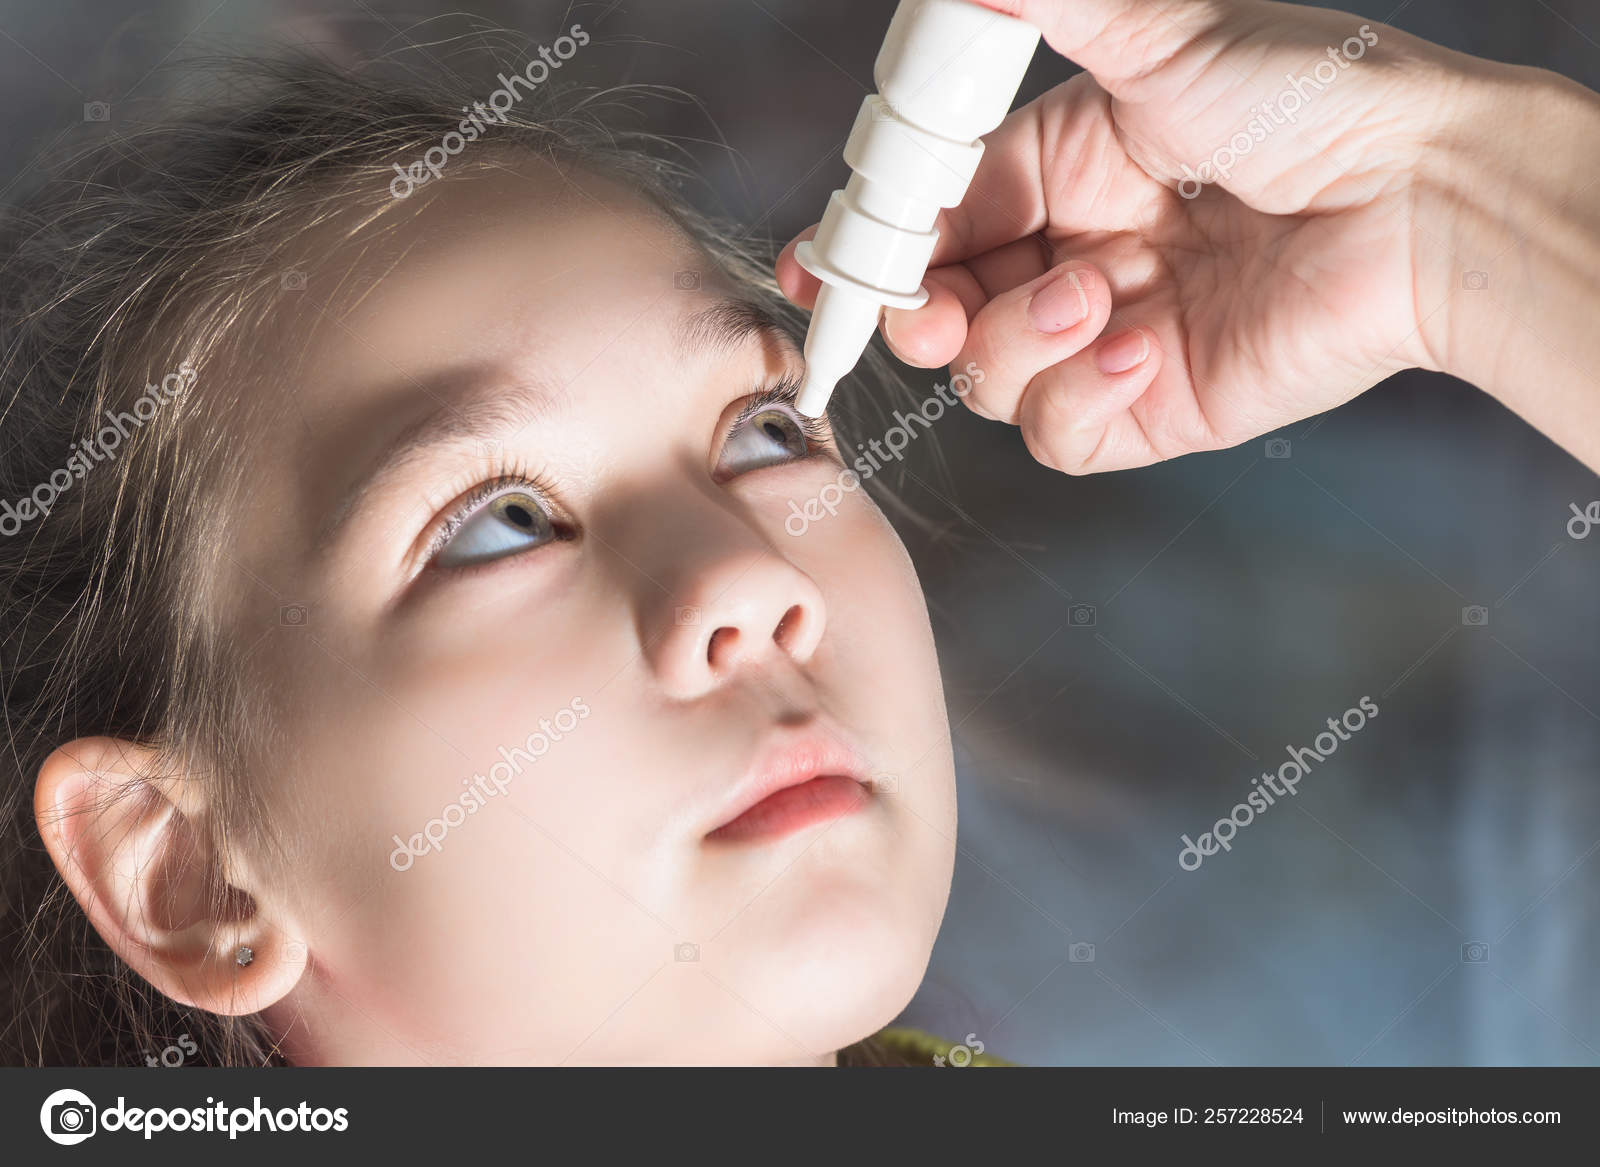 Промывание глаз при конъюнктивите детям в каплях